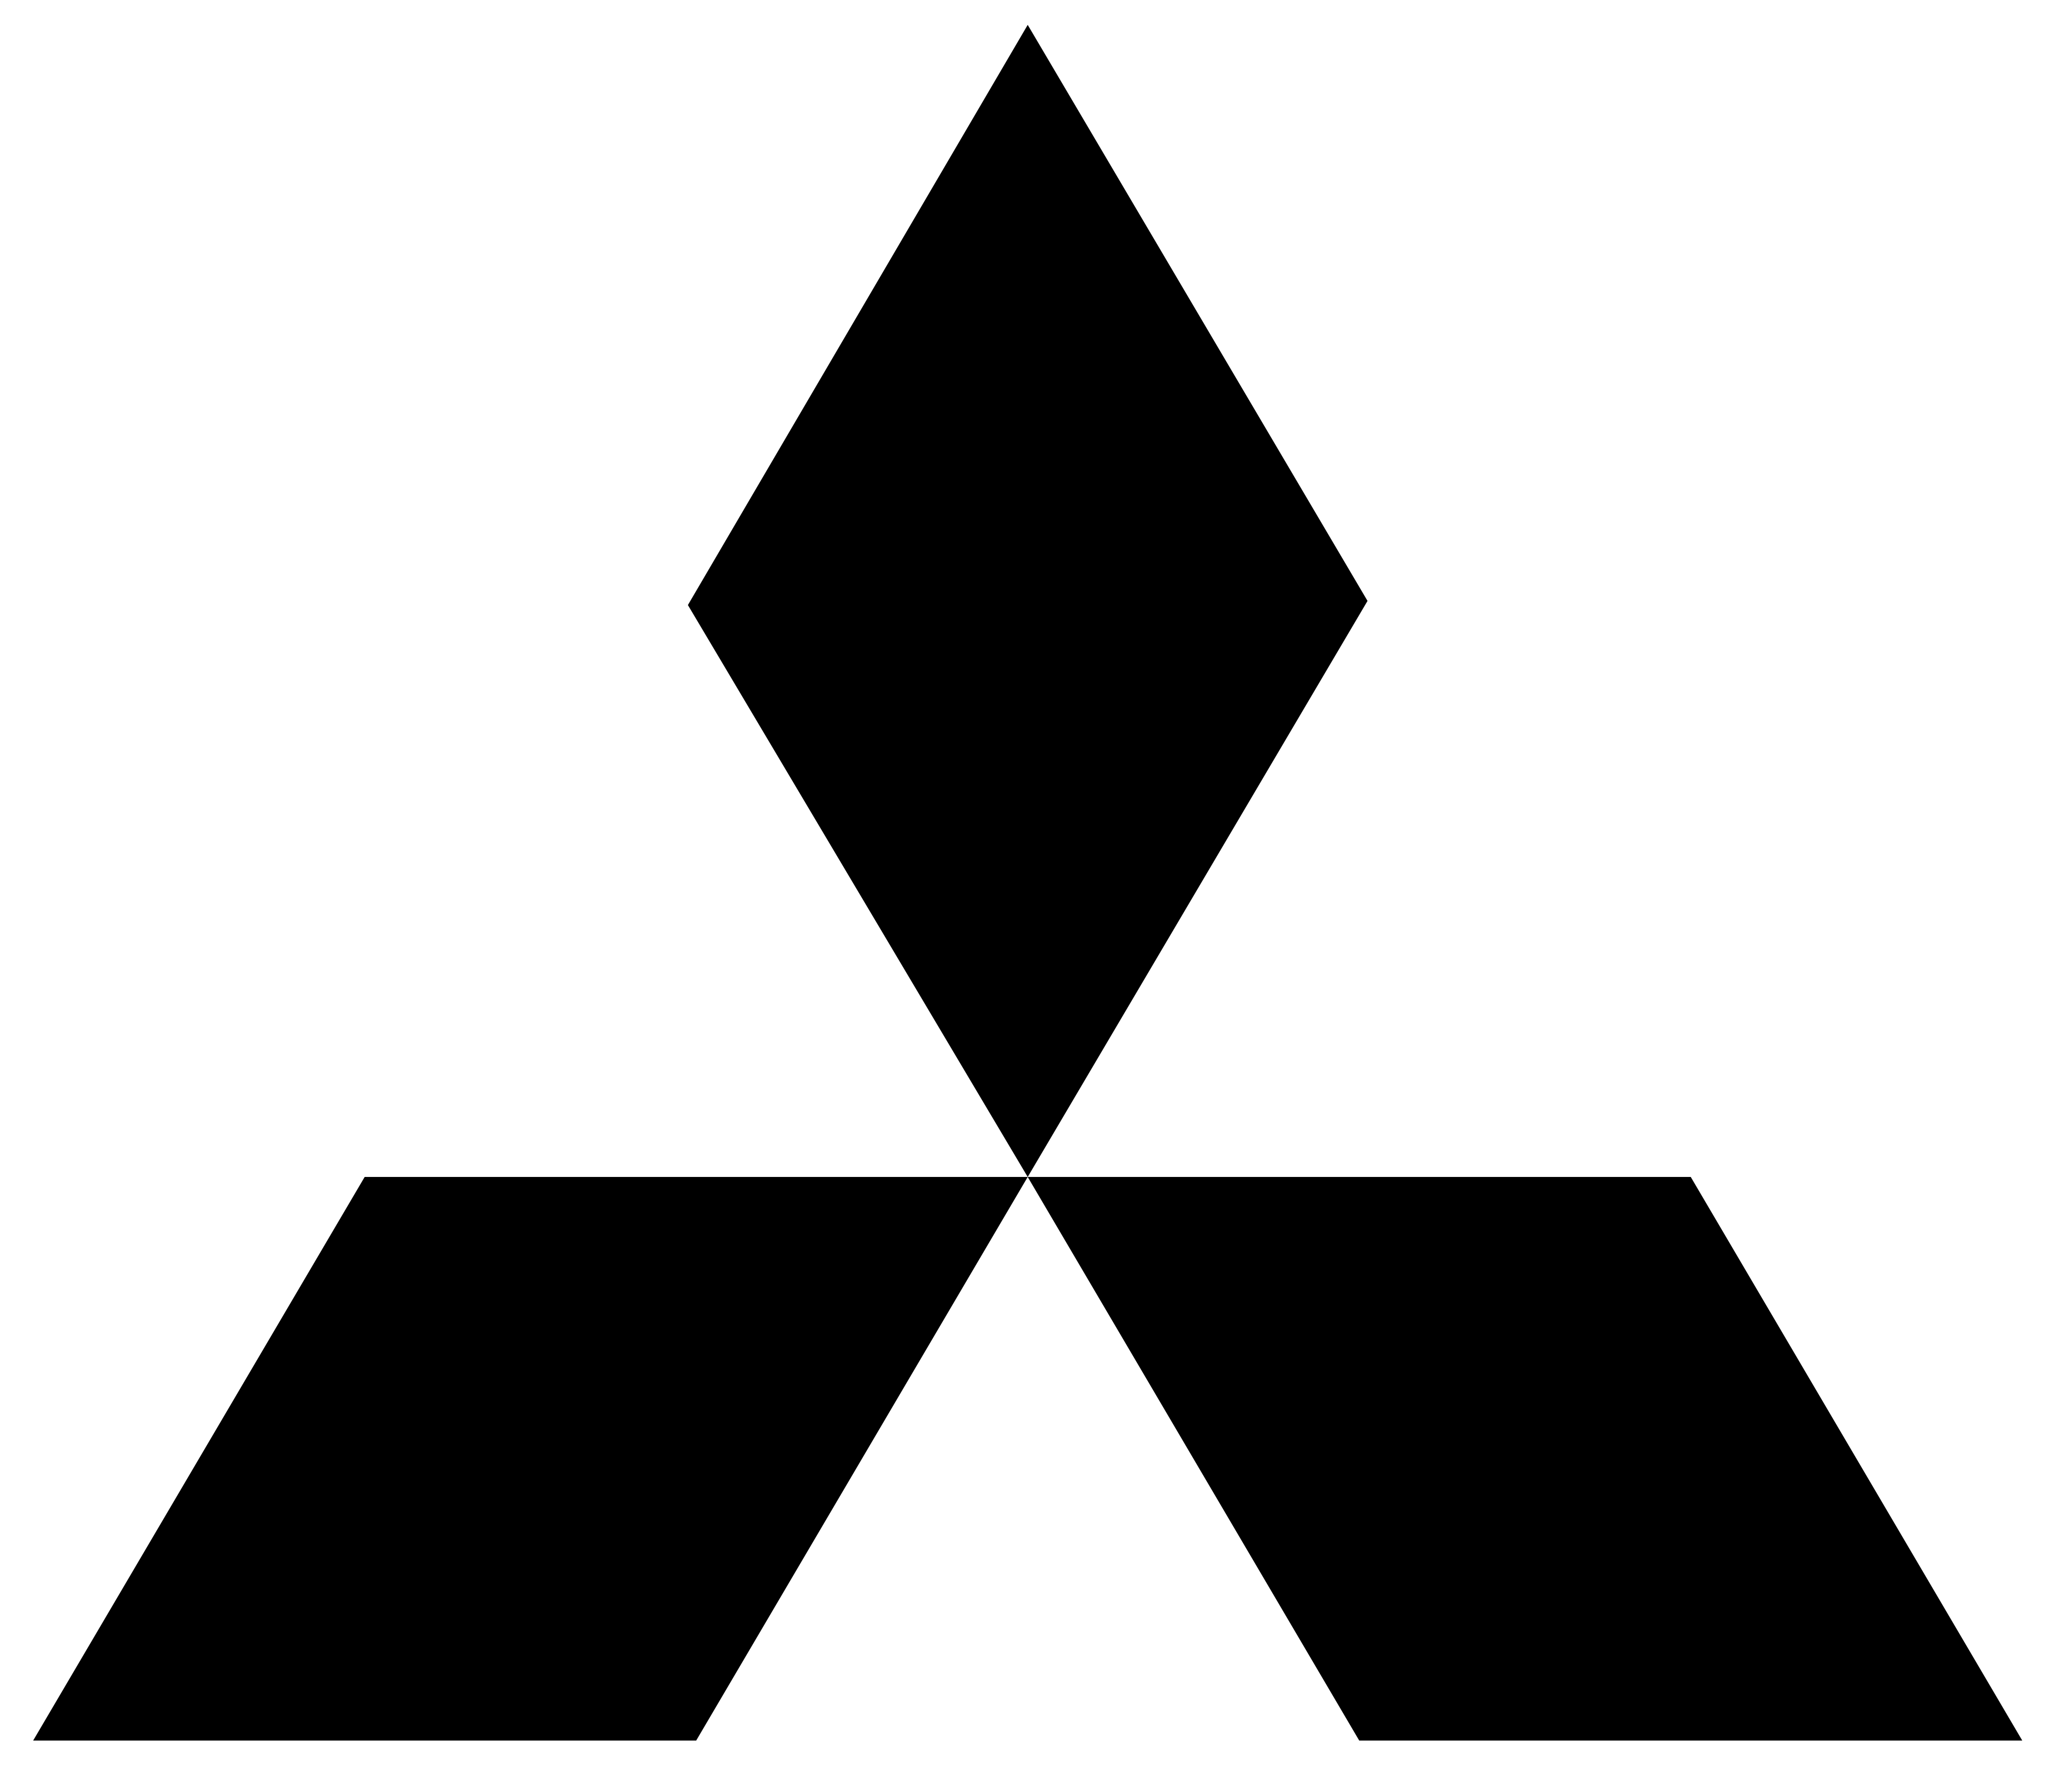 Mitsubishi Logo - Mitsubishi Logo PNG Image - PurePNG | Free transparent CC0 PNG Image ...